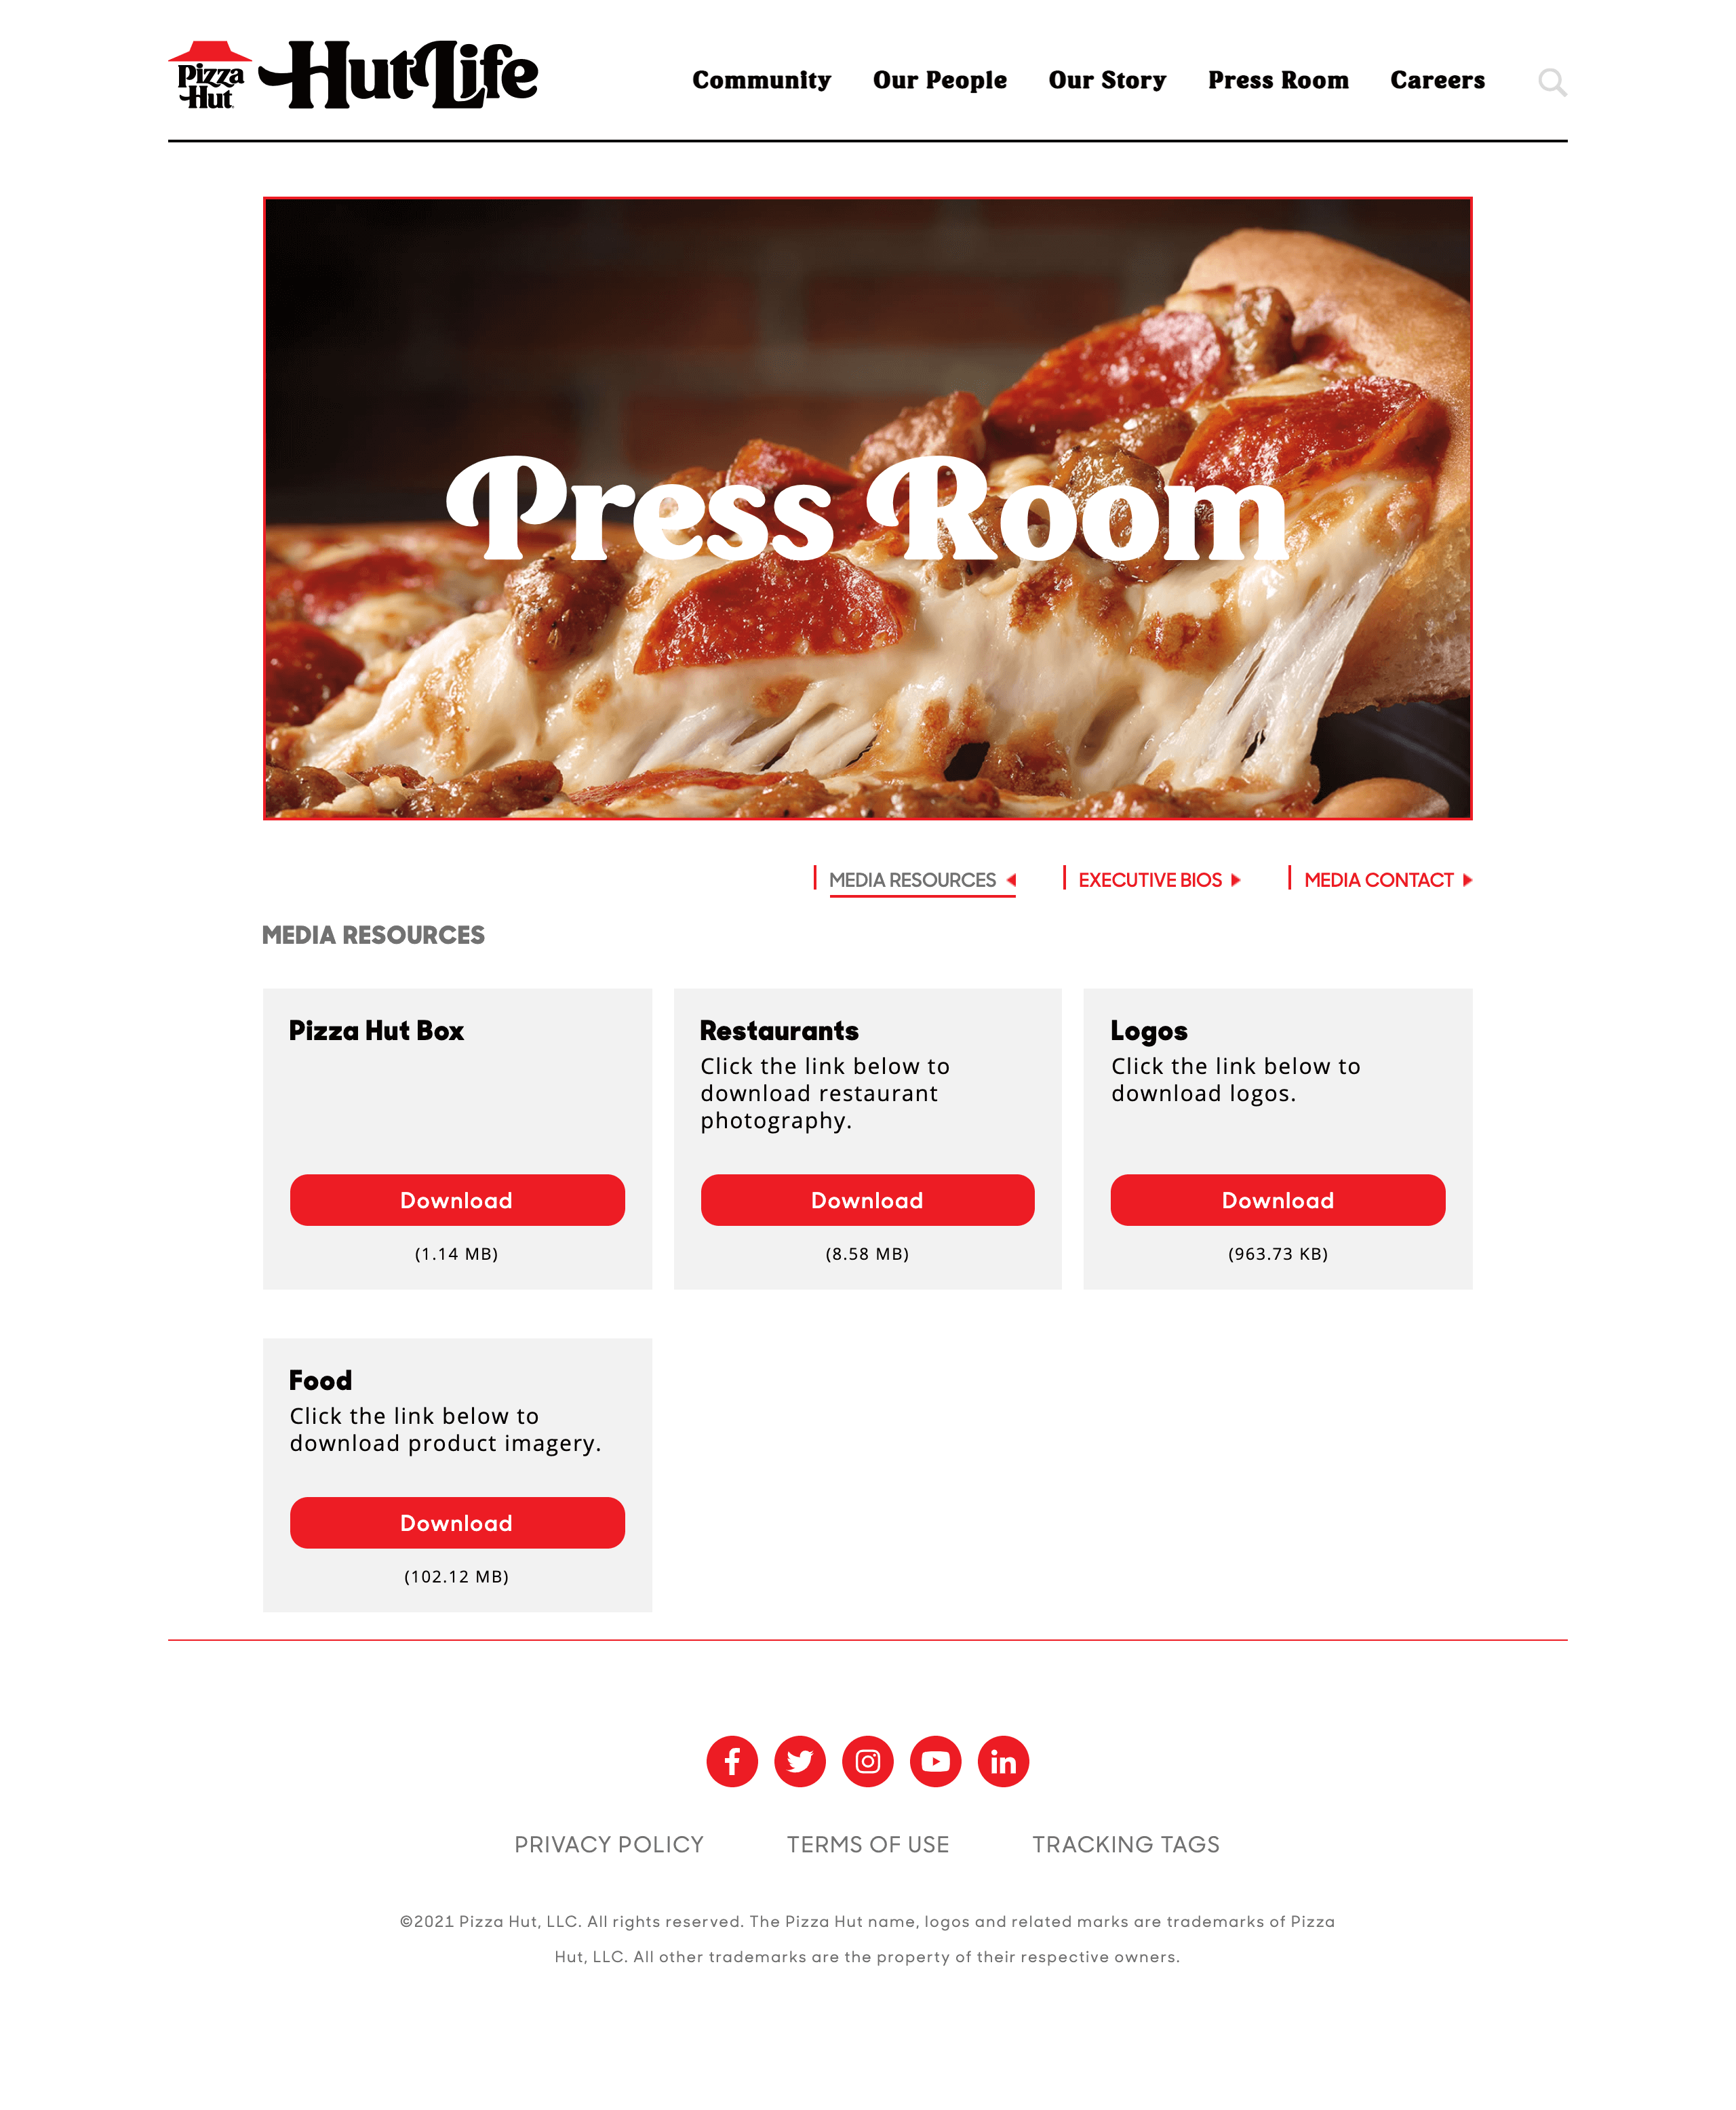 Pizza Hut press kit